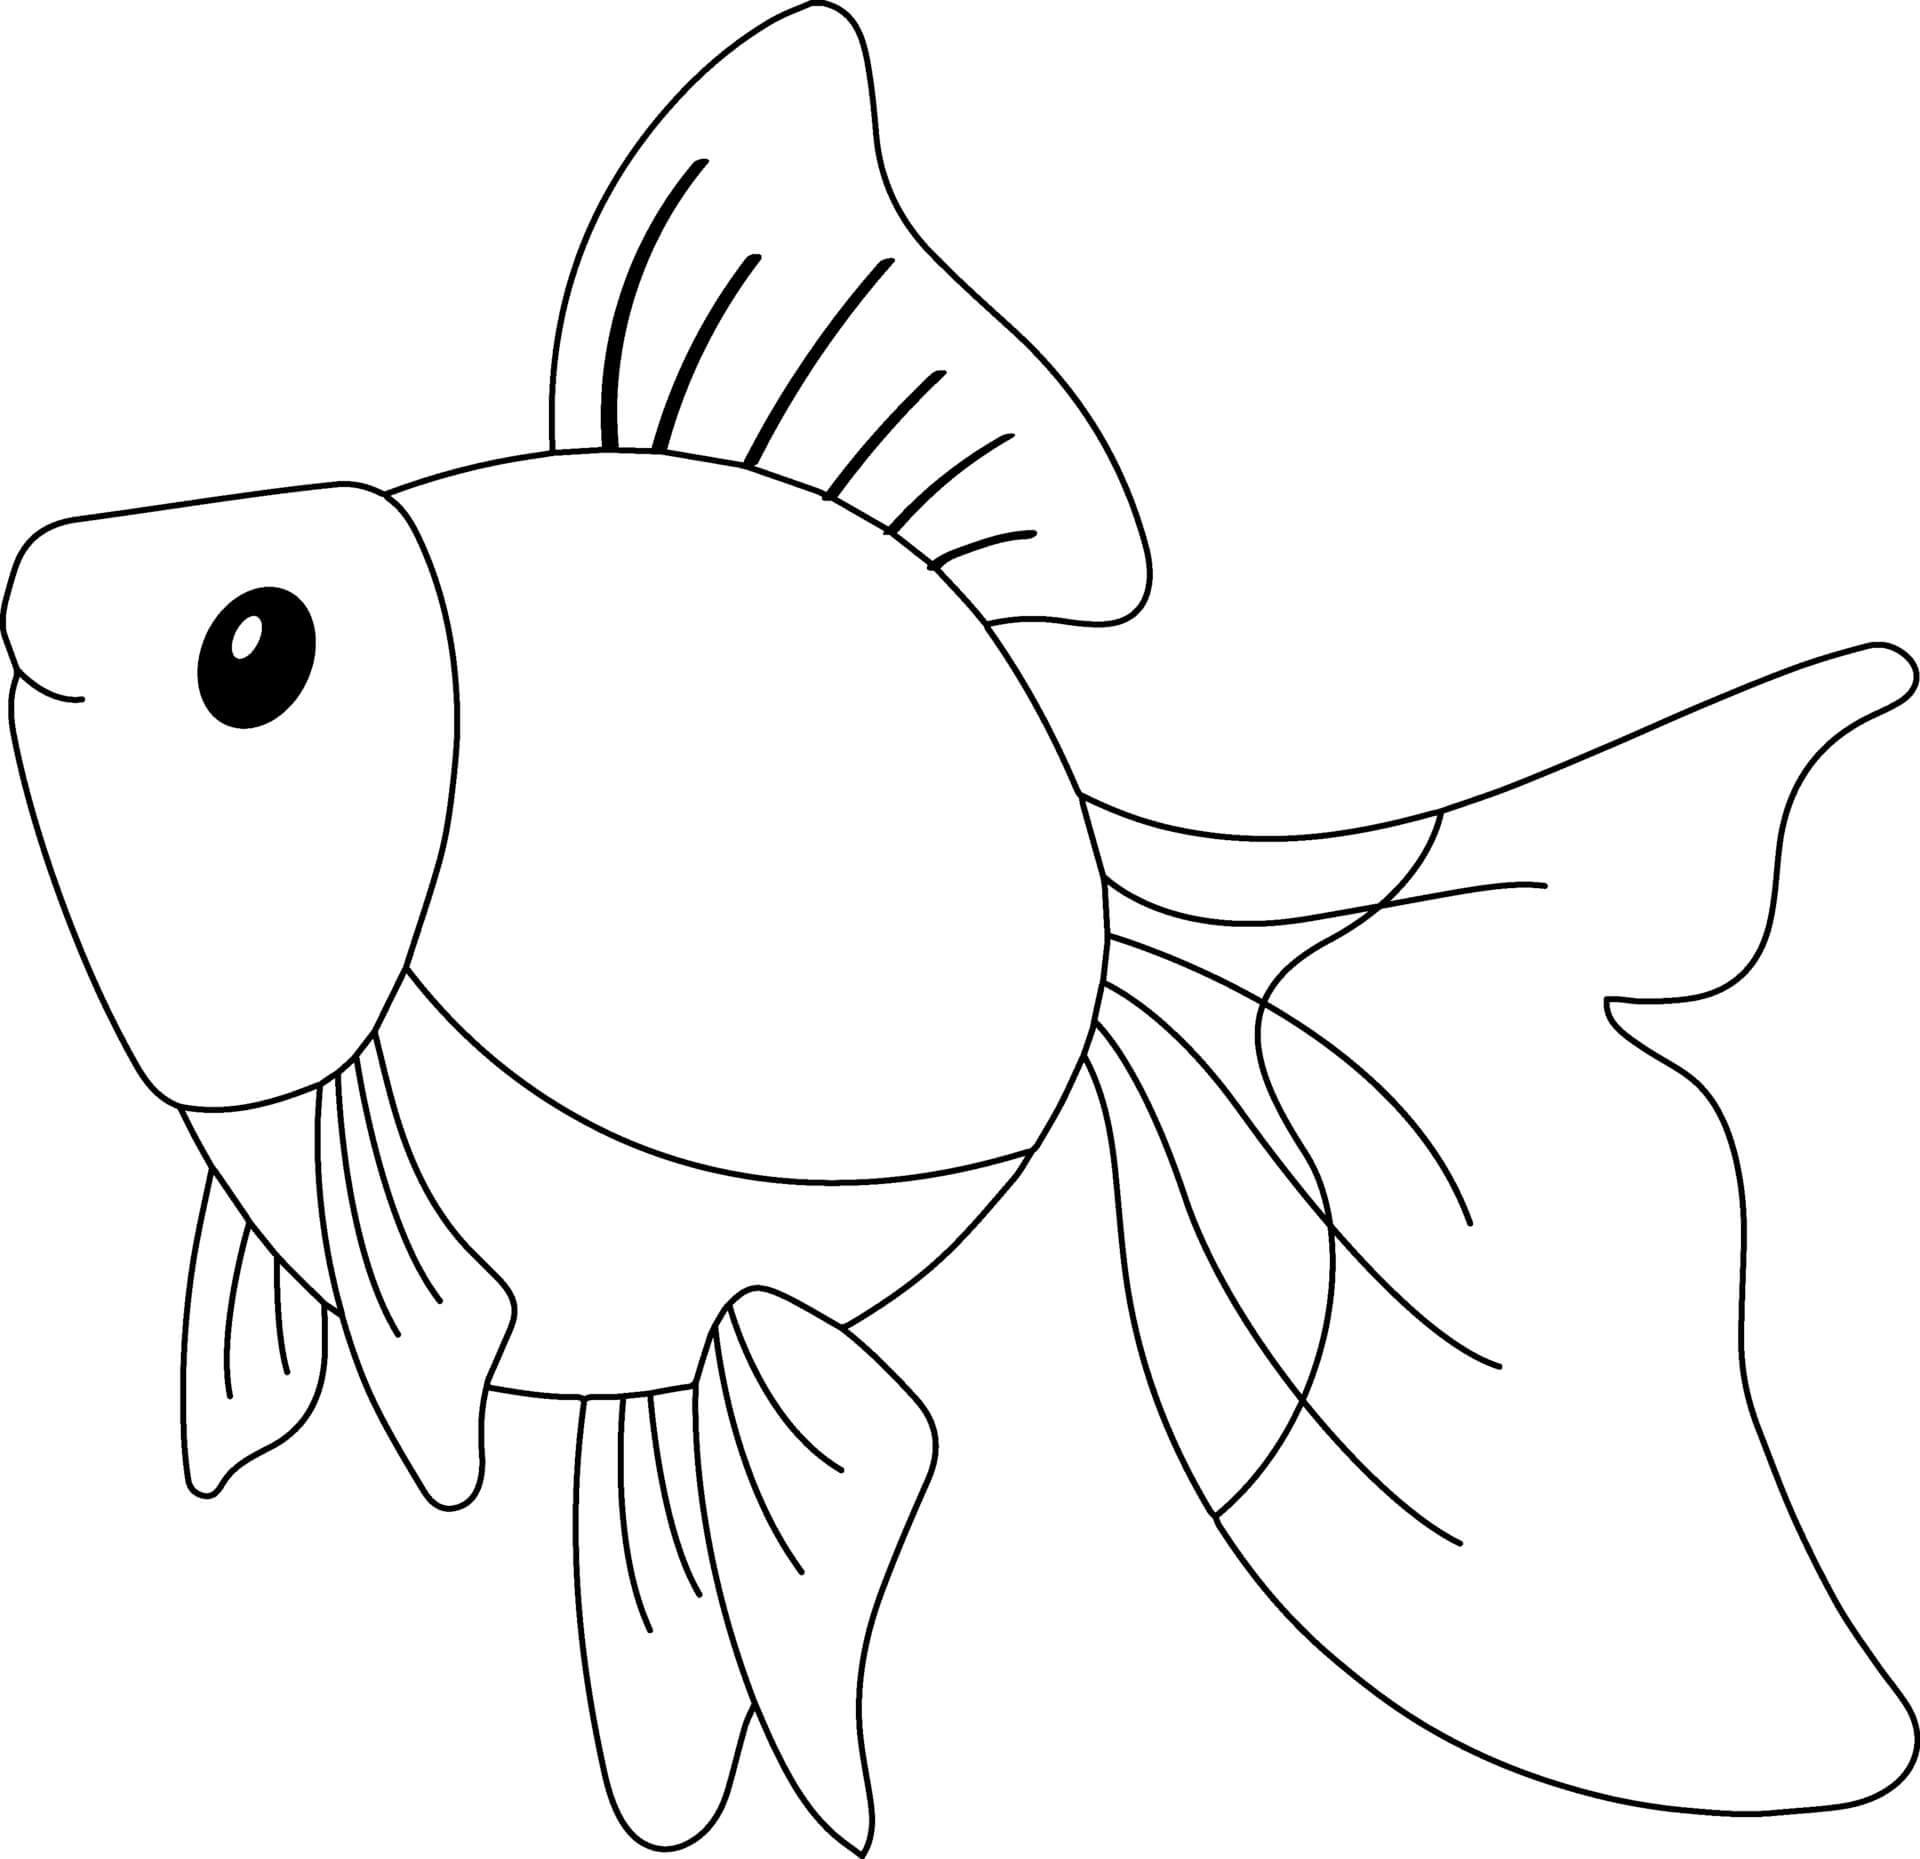 Раскраска Золотая рыбка для детей 6-7 лет